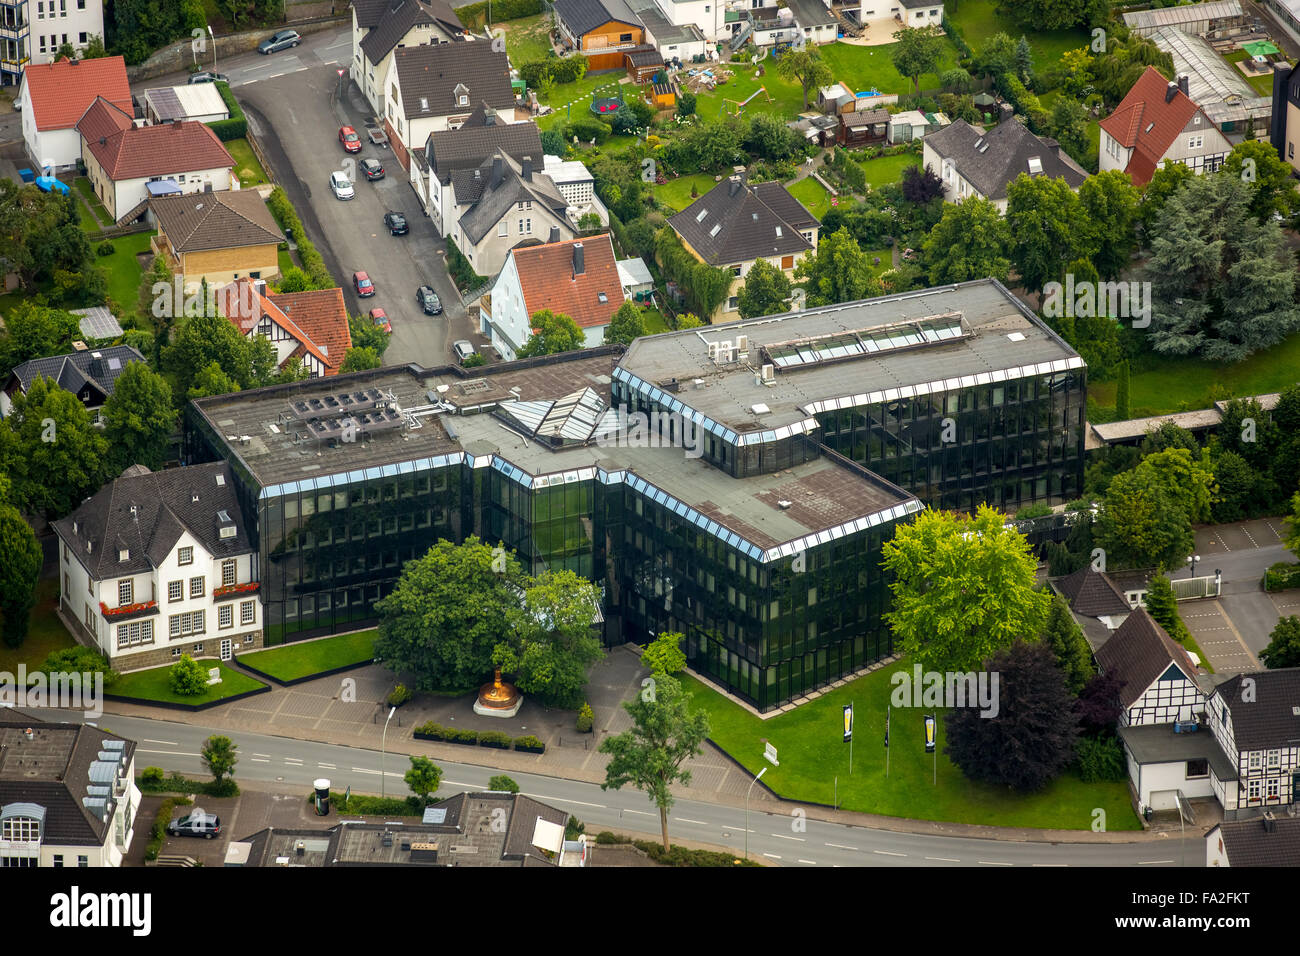 Vista aérea, administrar Warsteiner Brauerei, Warstein, cervecería, distrito de Soest, Renania del Norte-Westfalia, Alemania, Europa Foto de stock